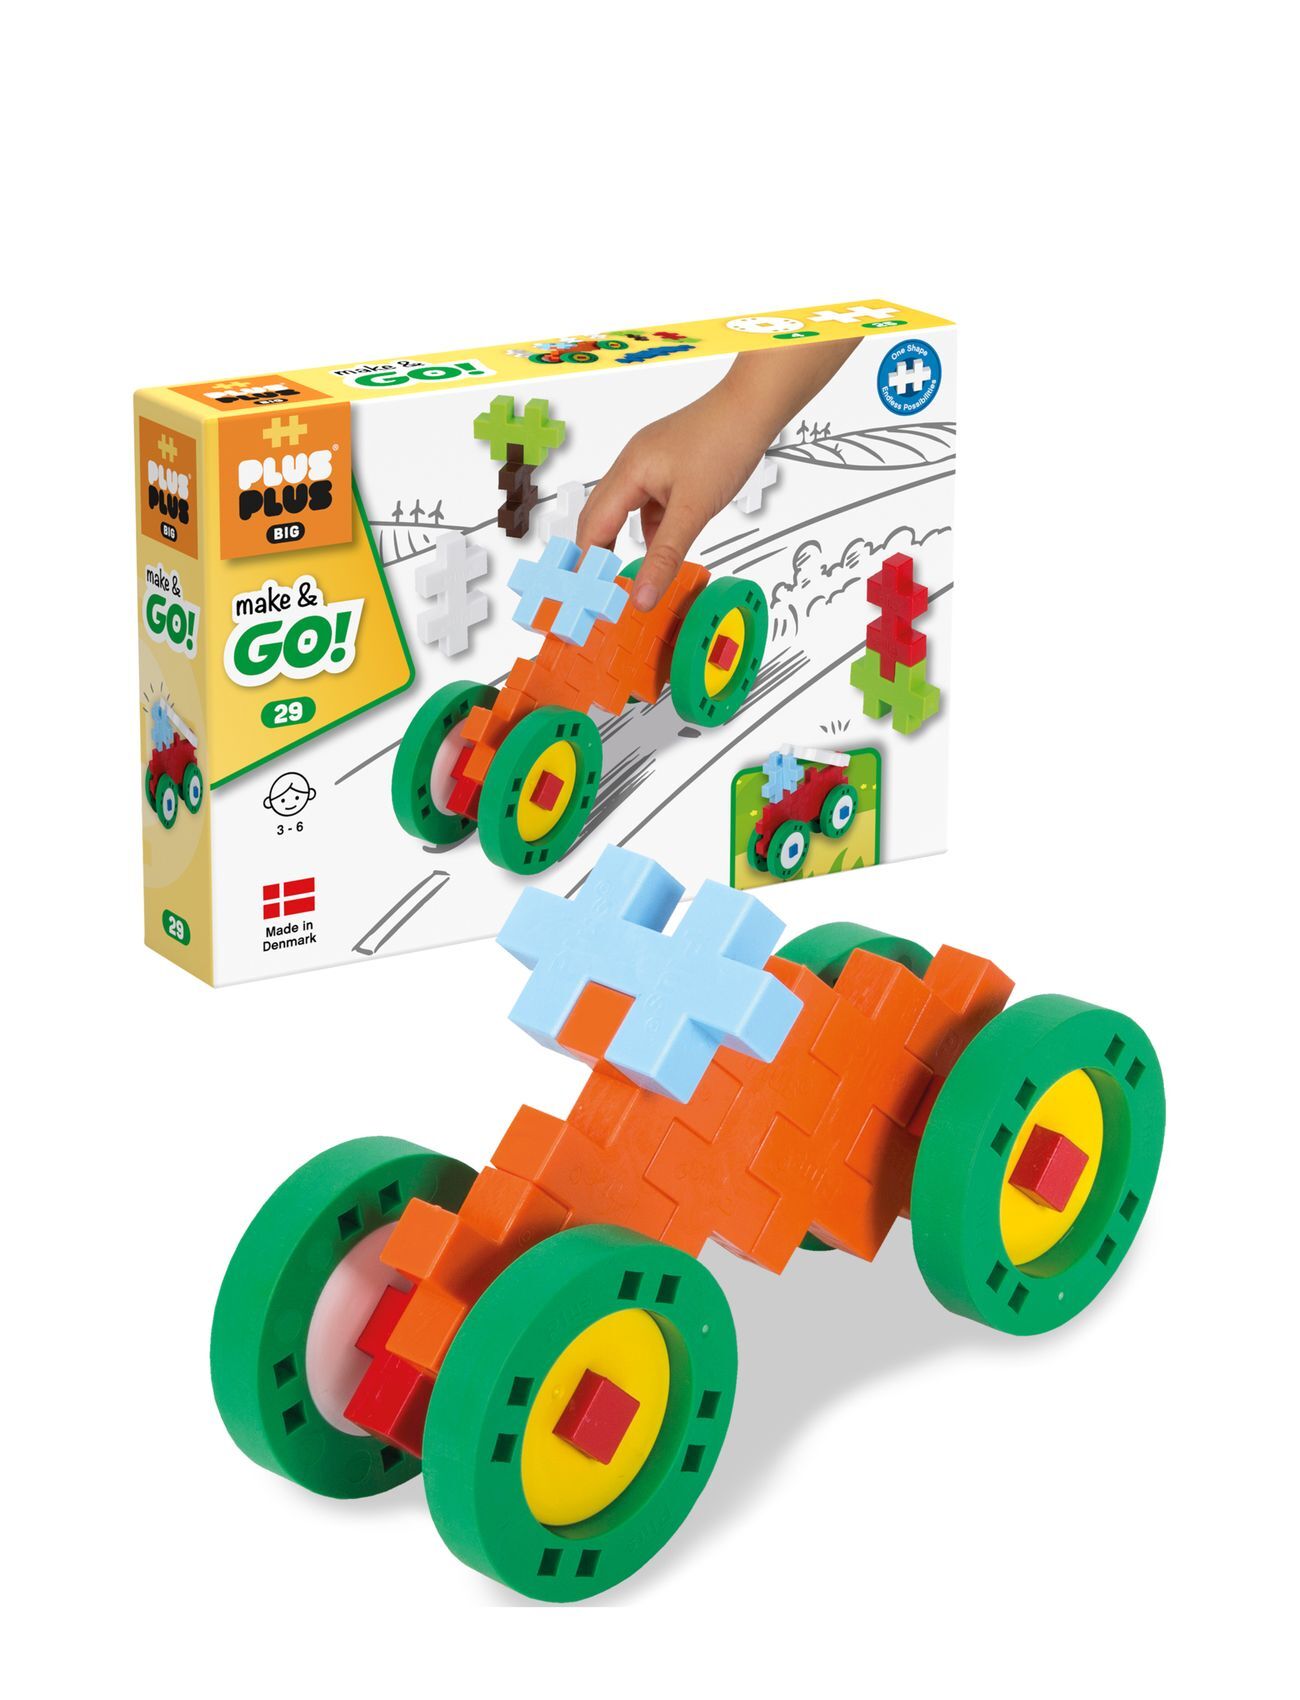 Plus-Plus Big Make & Go! 29 Toys Building Sets & Blocks Building Sets Multi/mønstret Plus-Plus